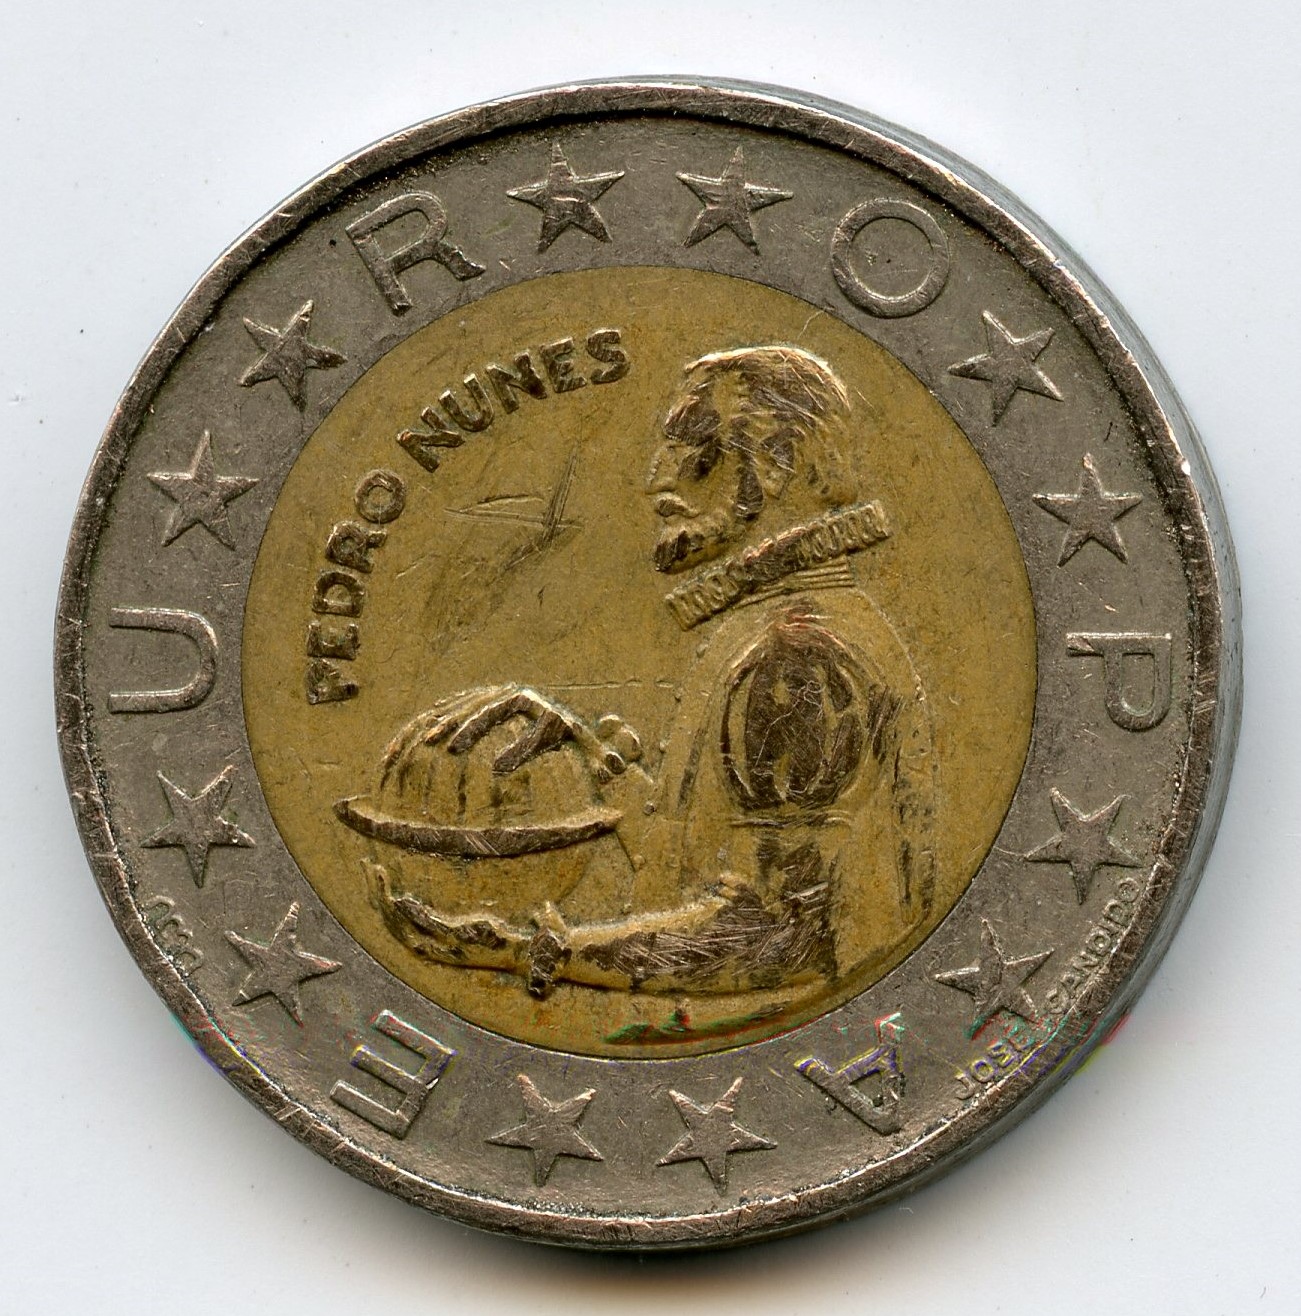 Portugal 100 escudo 1989001.jpg